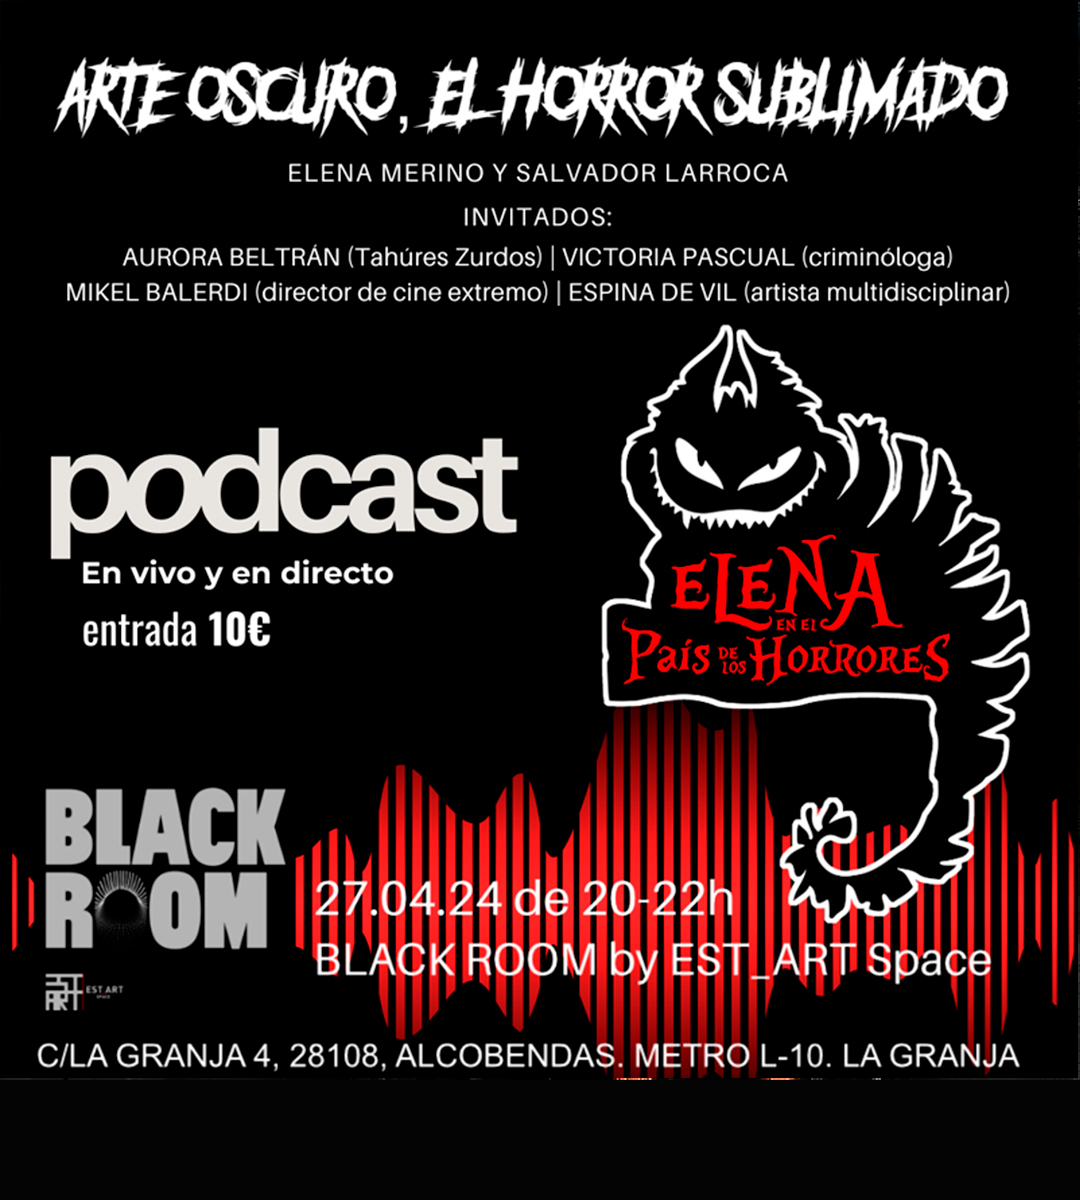 Elena en el país de los horrores, BLACK ROOM, EST_ART Space Alcobendas, Madrid